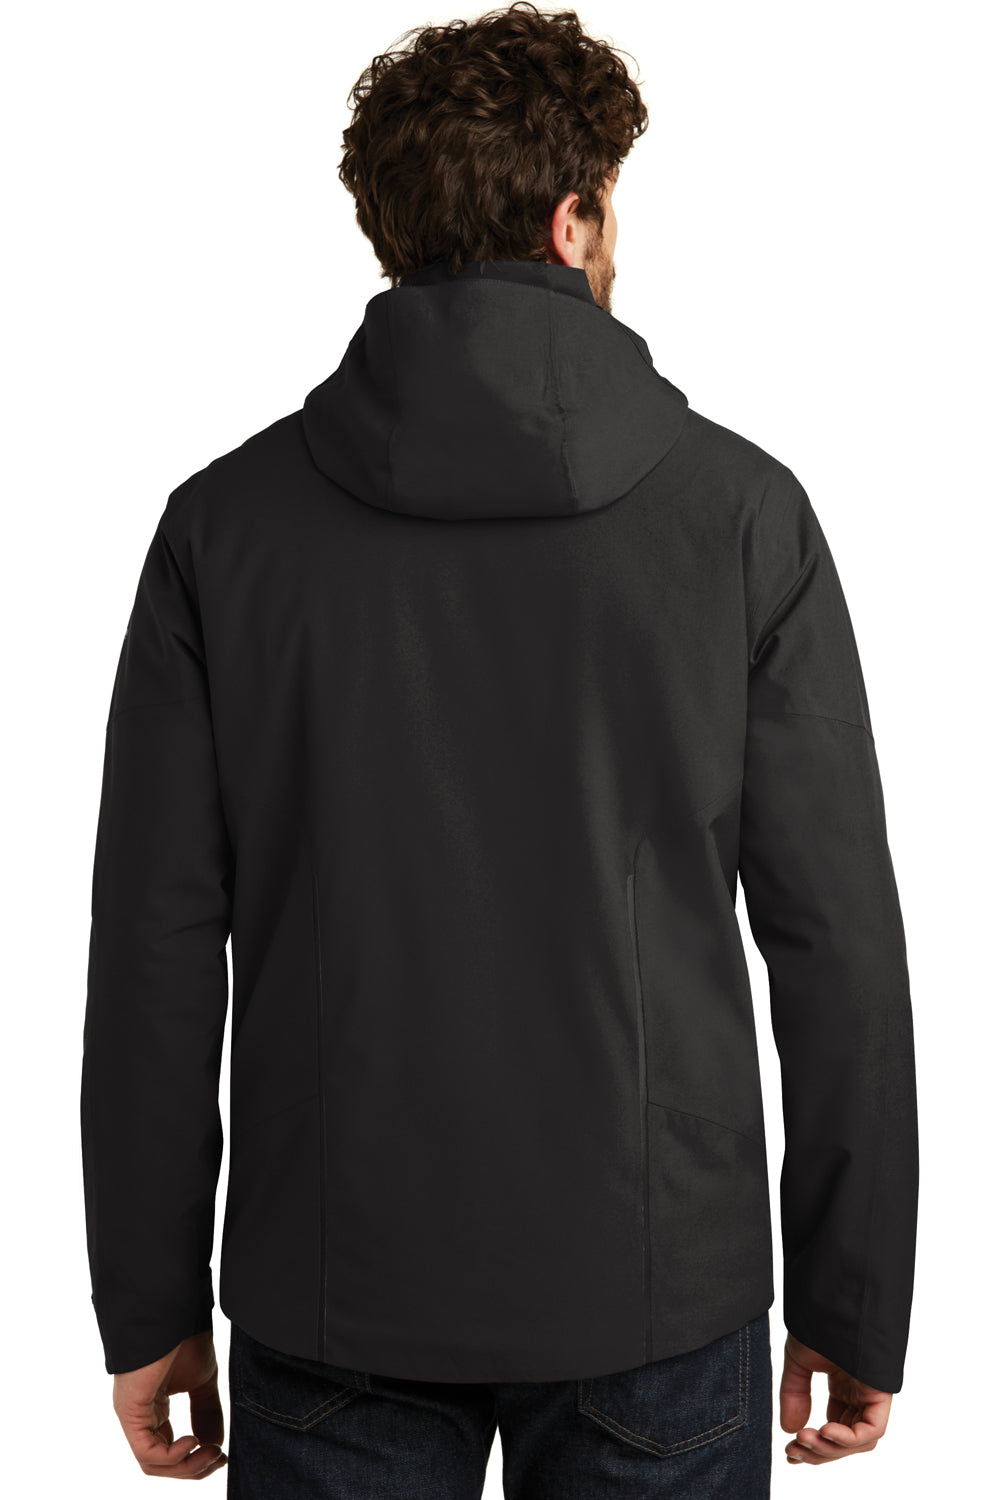 Eddie Bauer EB554 Mens WeatherEdge Plus Waterproof Full Zip Hooded Jacket Black Model Back